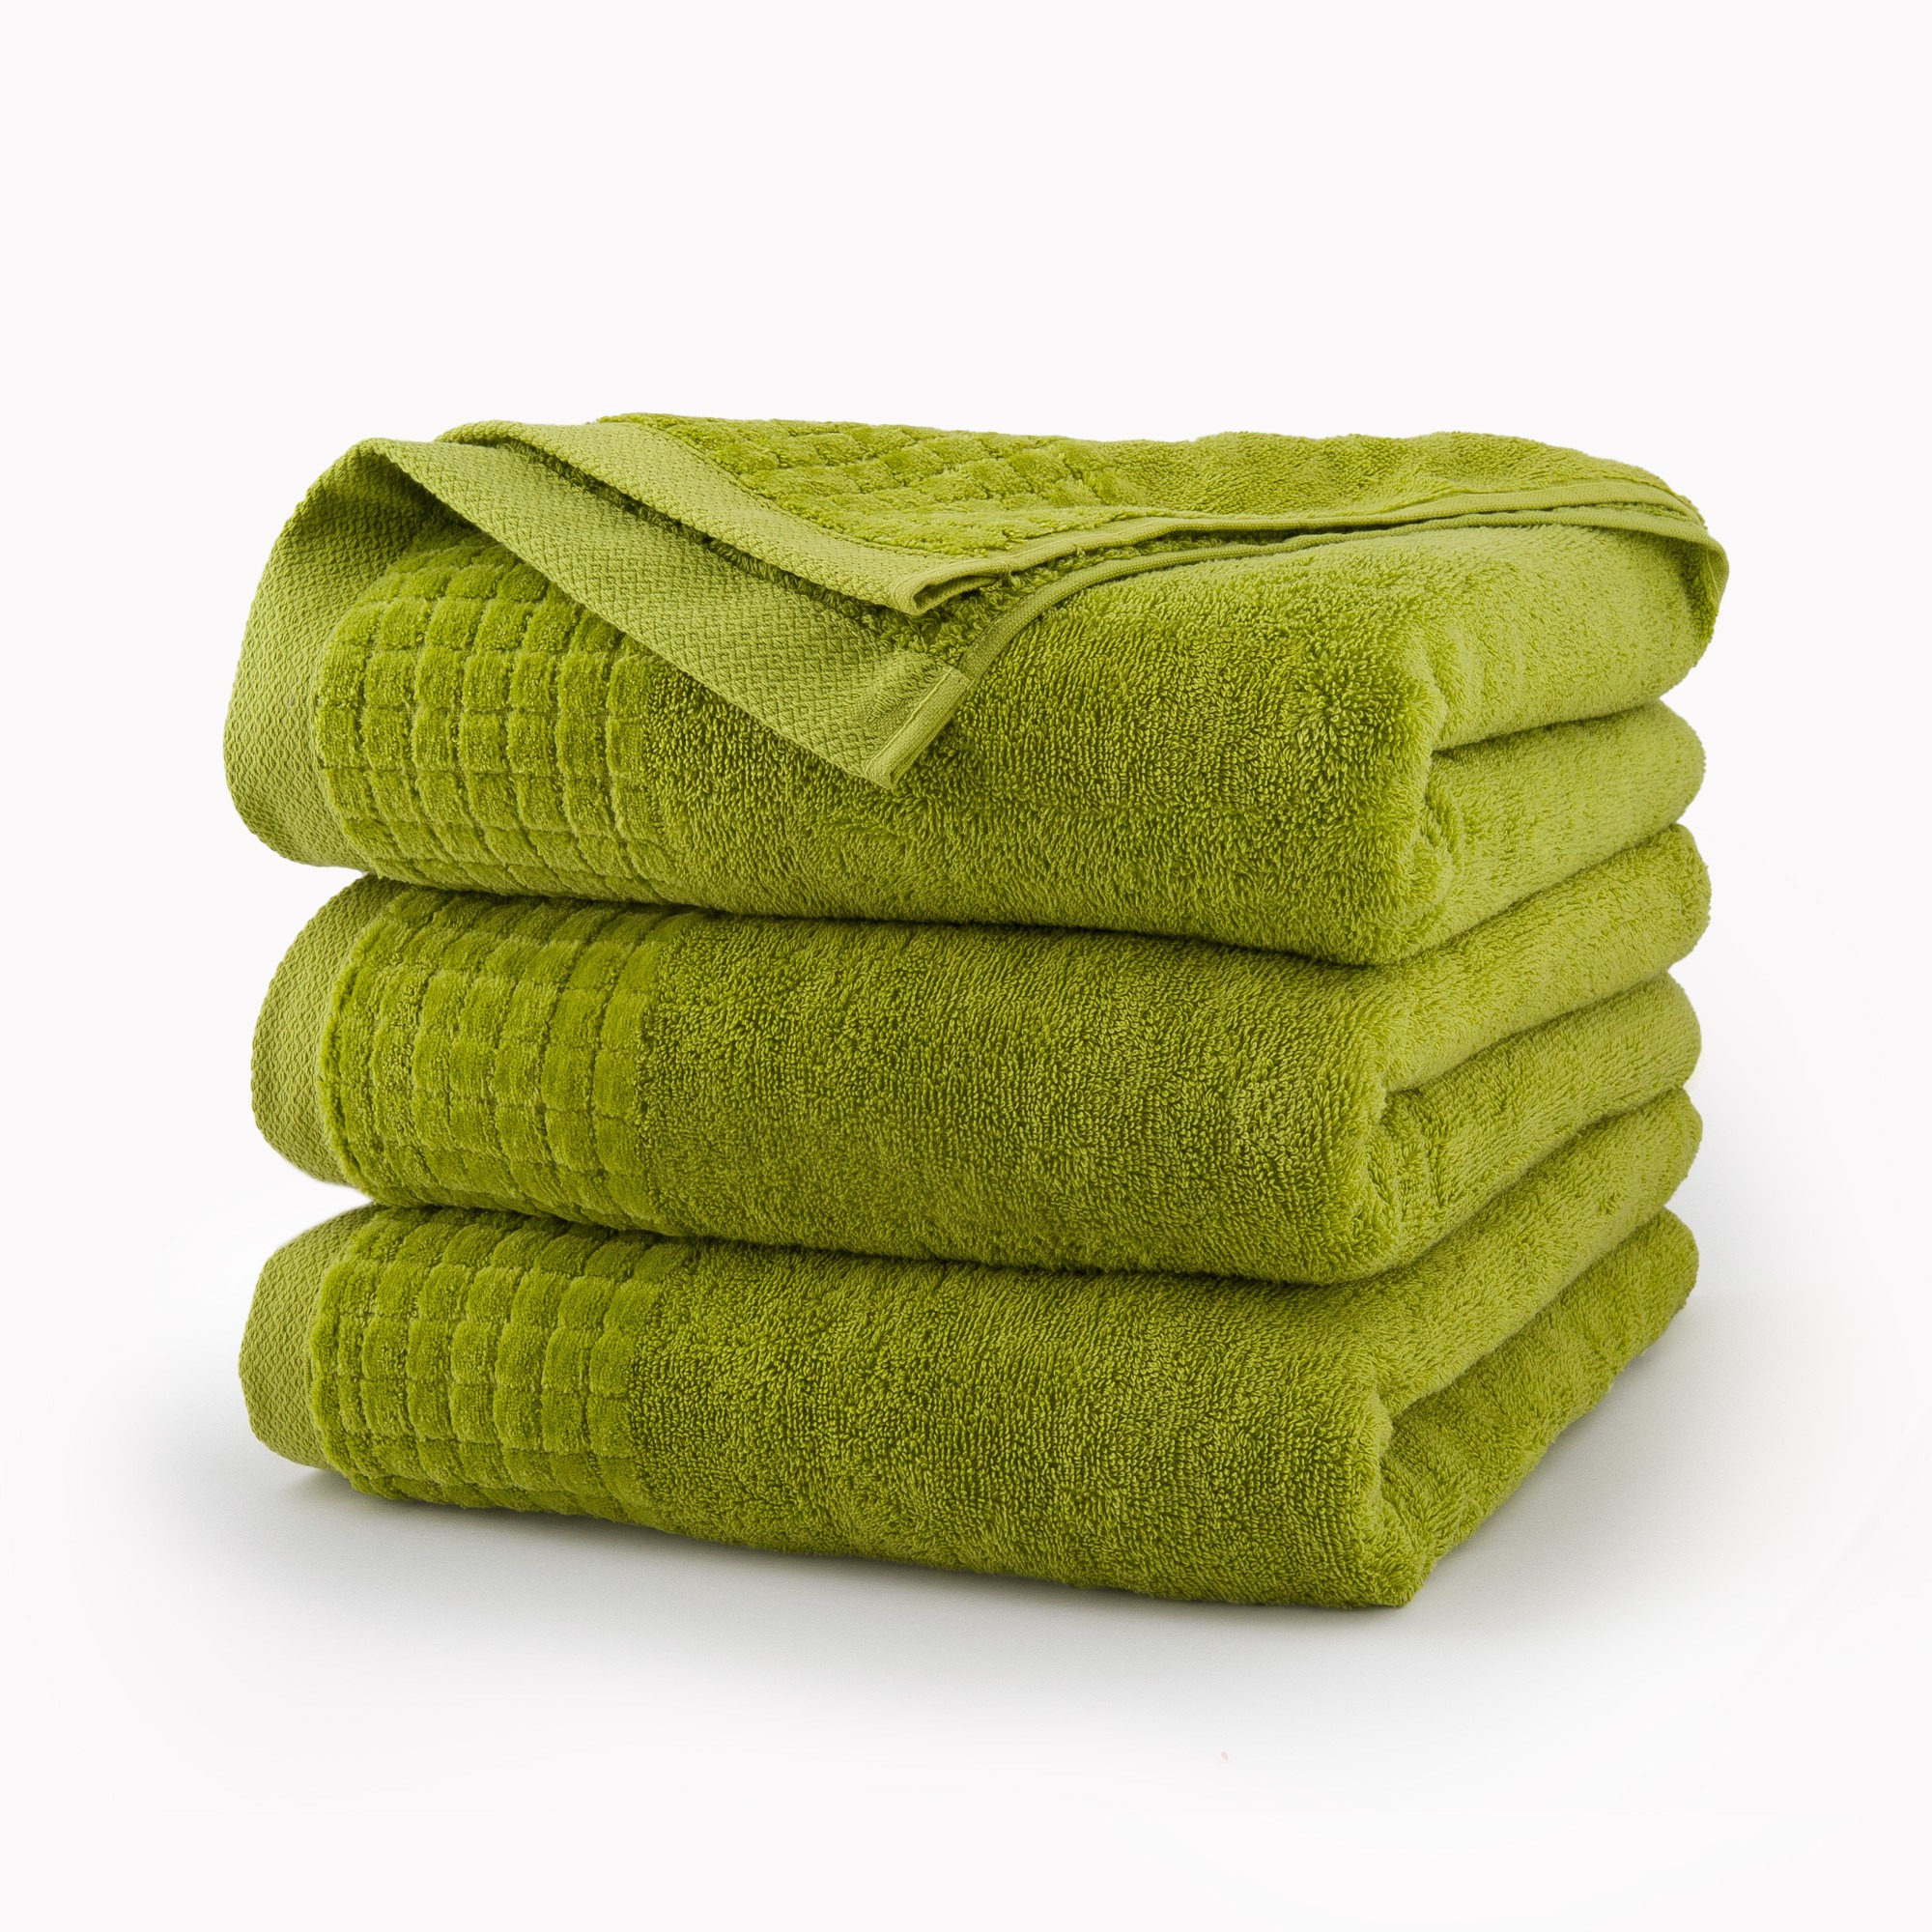 Полотенце ч. Салатовое полотенце. Зеленое полотенце. Полотенце махровое зеленый. Сложенные полотенца.